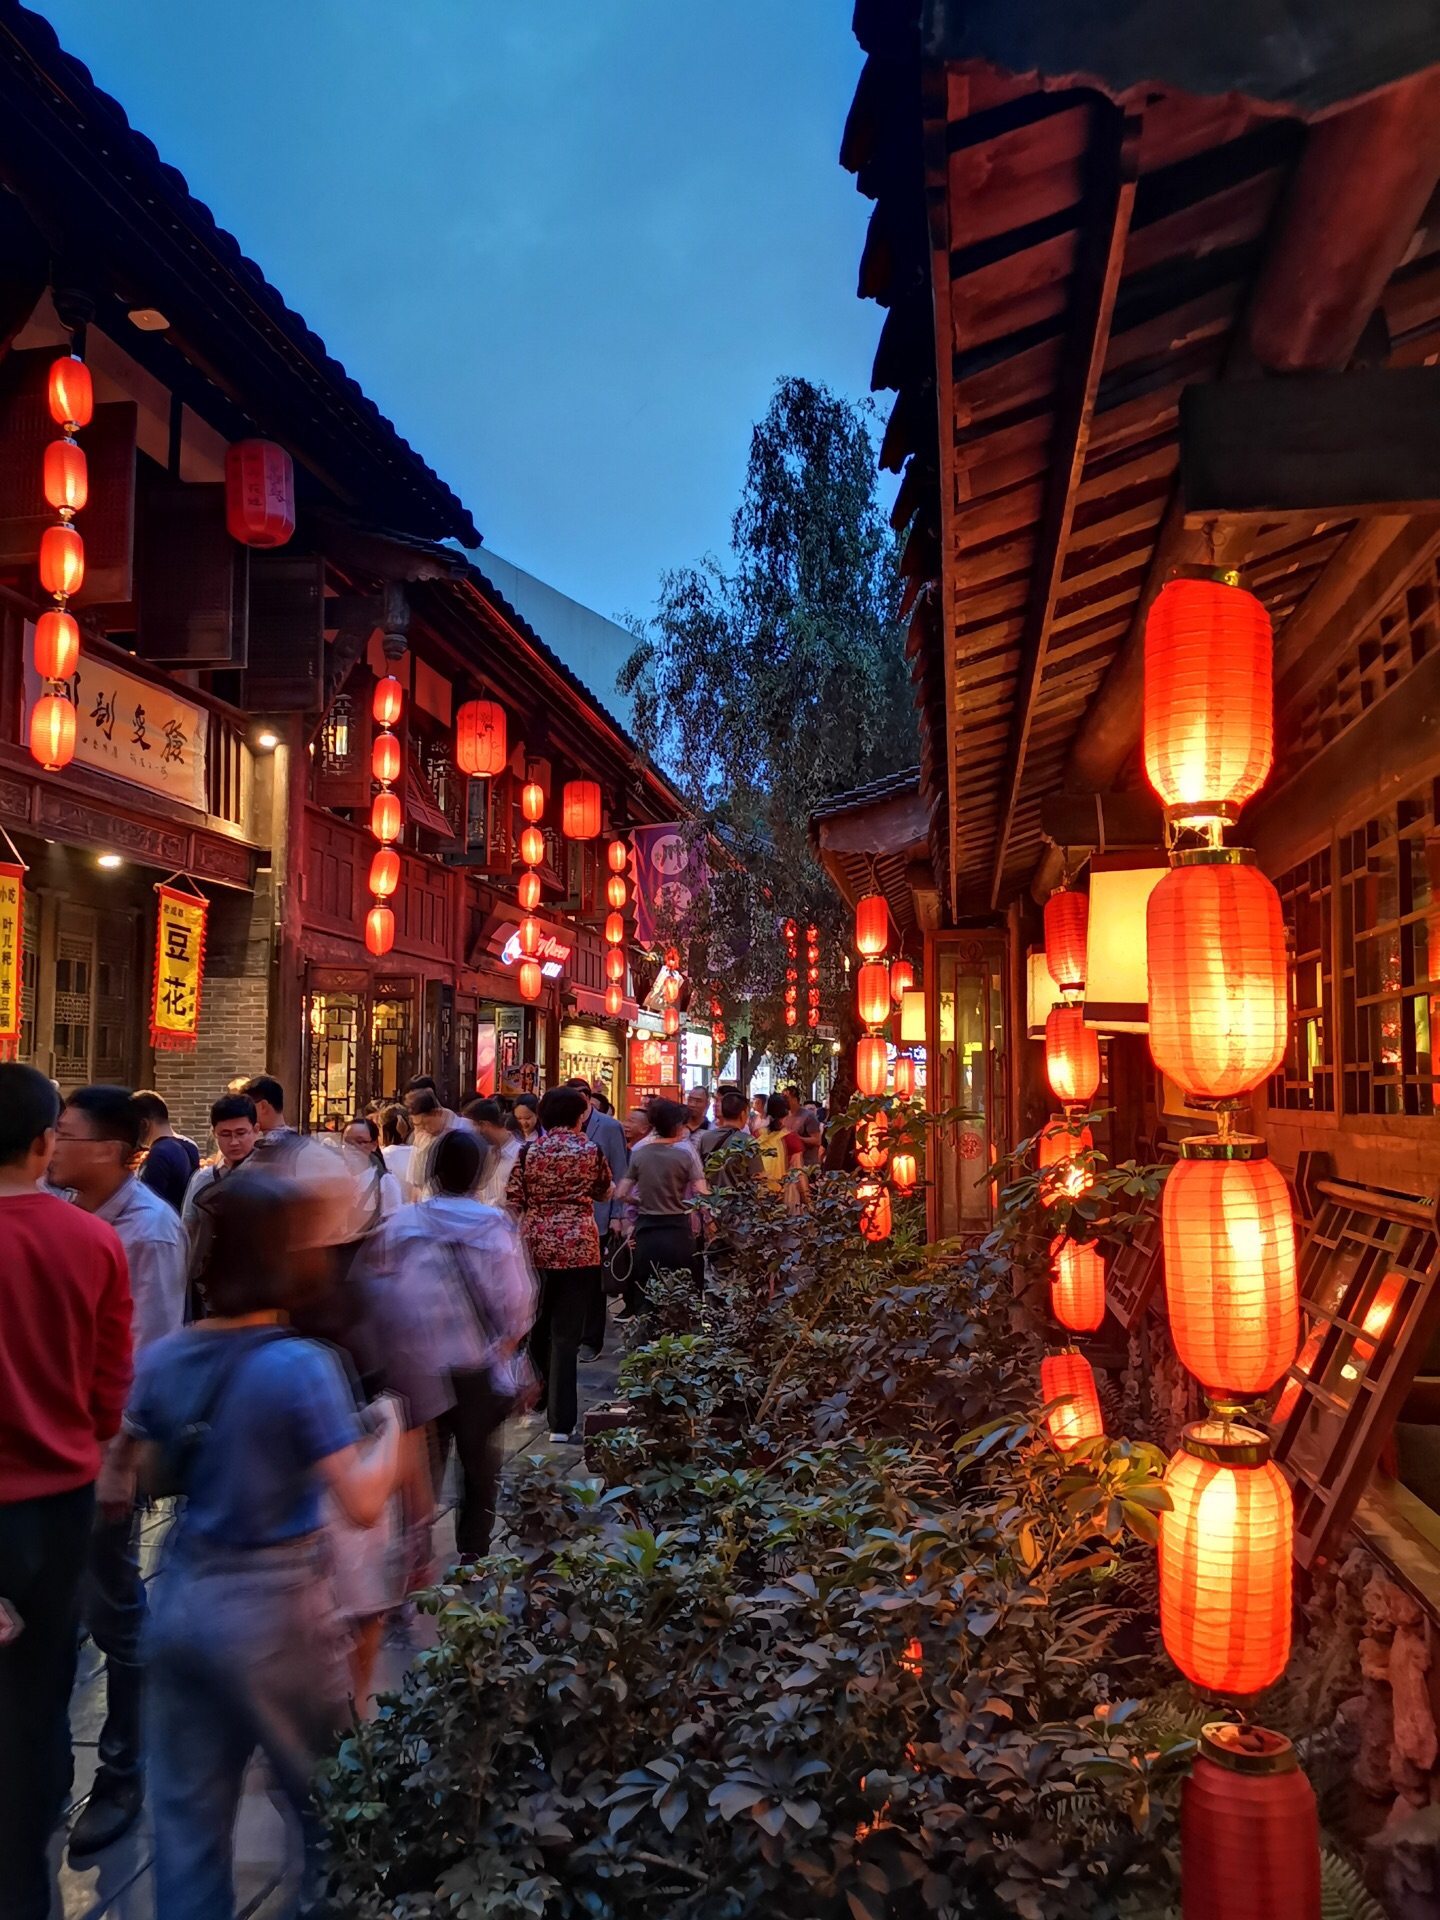 永泰古城夜景图片